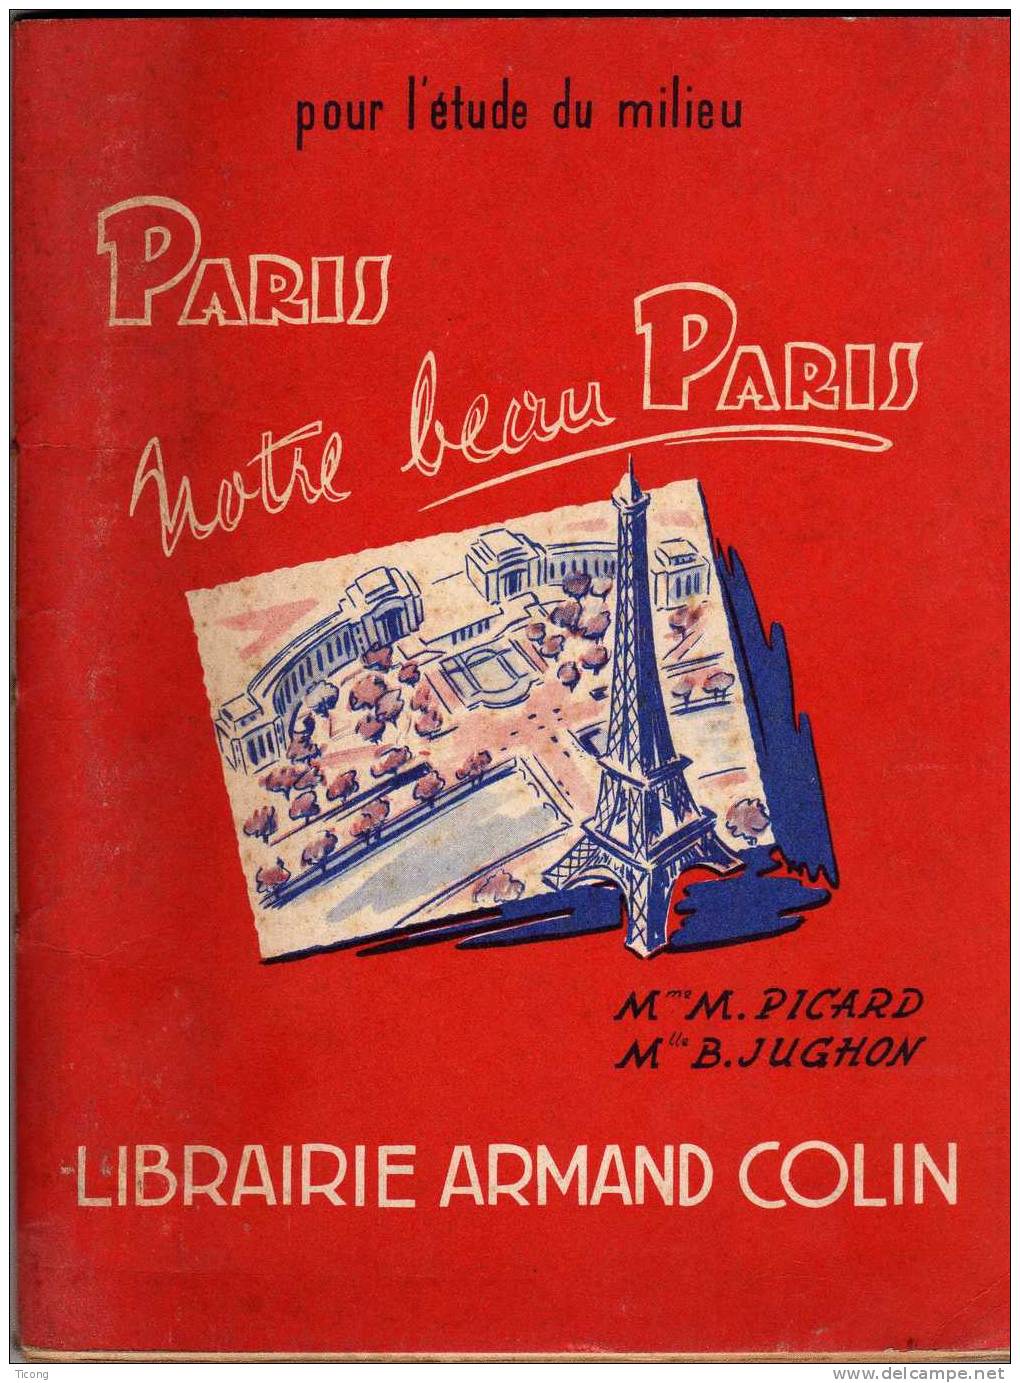 PARIS NOTRE BEAU PARIS - PICARD ET JUGHON - ILLUSTRATIONS DE JP MAURIN - 1ERE EDITION ARMAND COLIN 1955 - 6-12 Anni